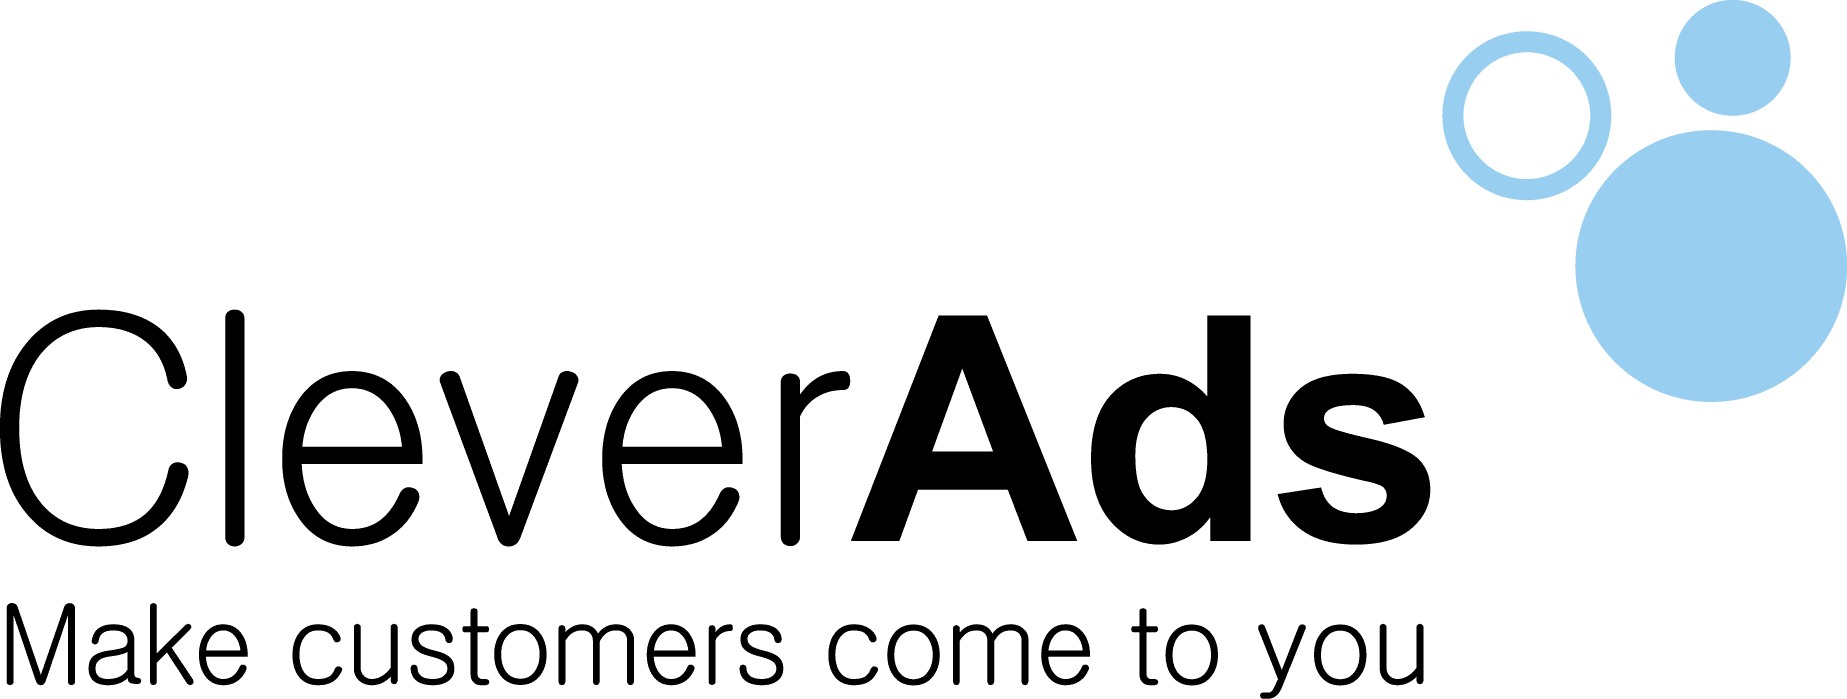 Công ty cổ phần Quảng cáo Thông Minh CleverAds - Một trong những đối tác cao cấp đầu tiên của Google tại Việt Nam